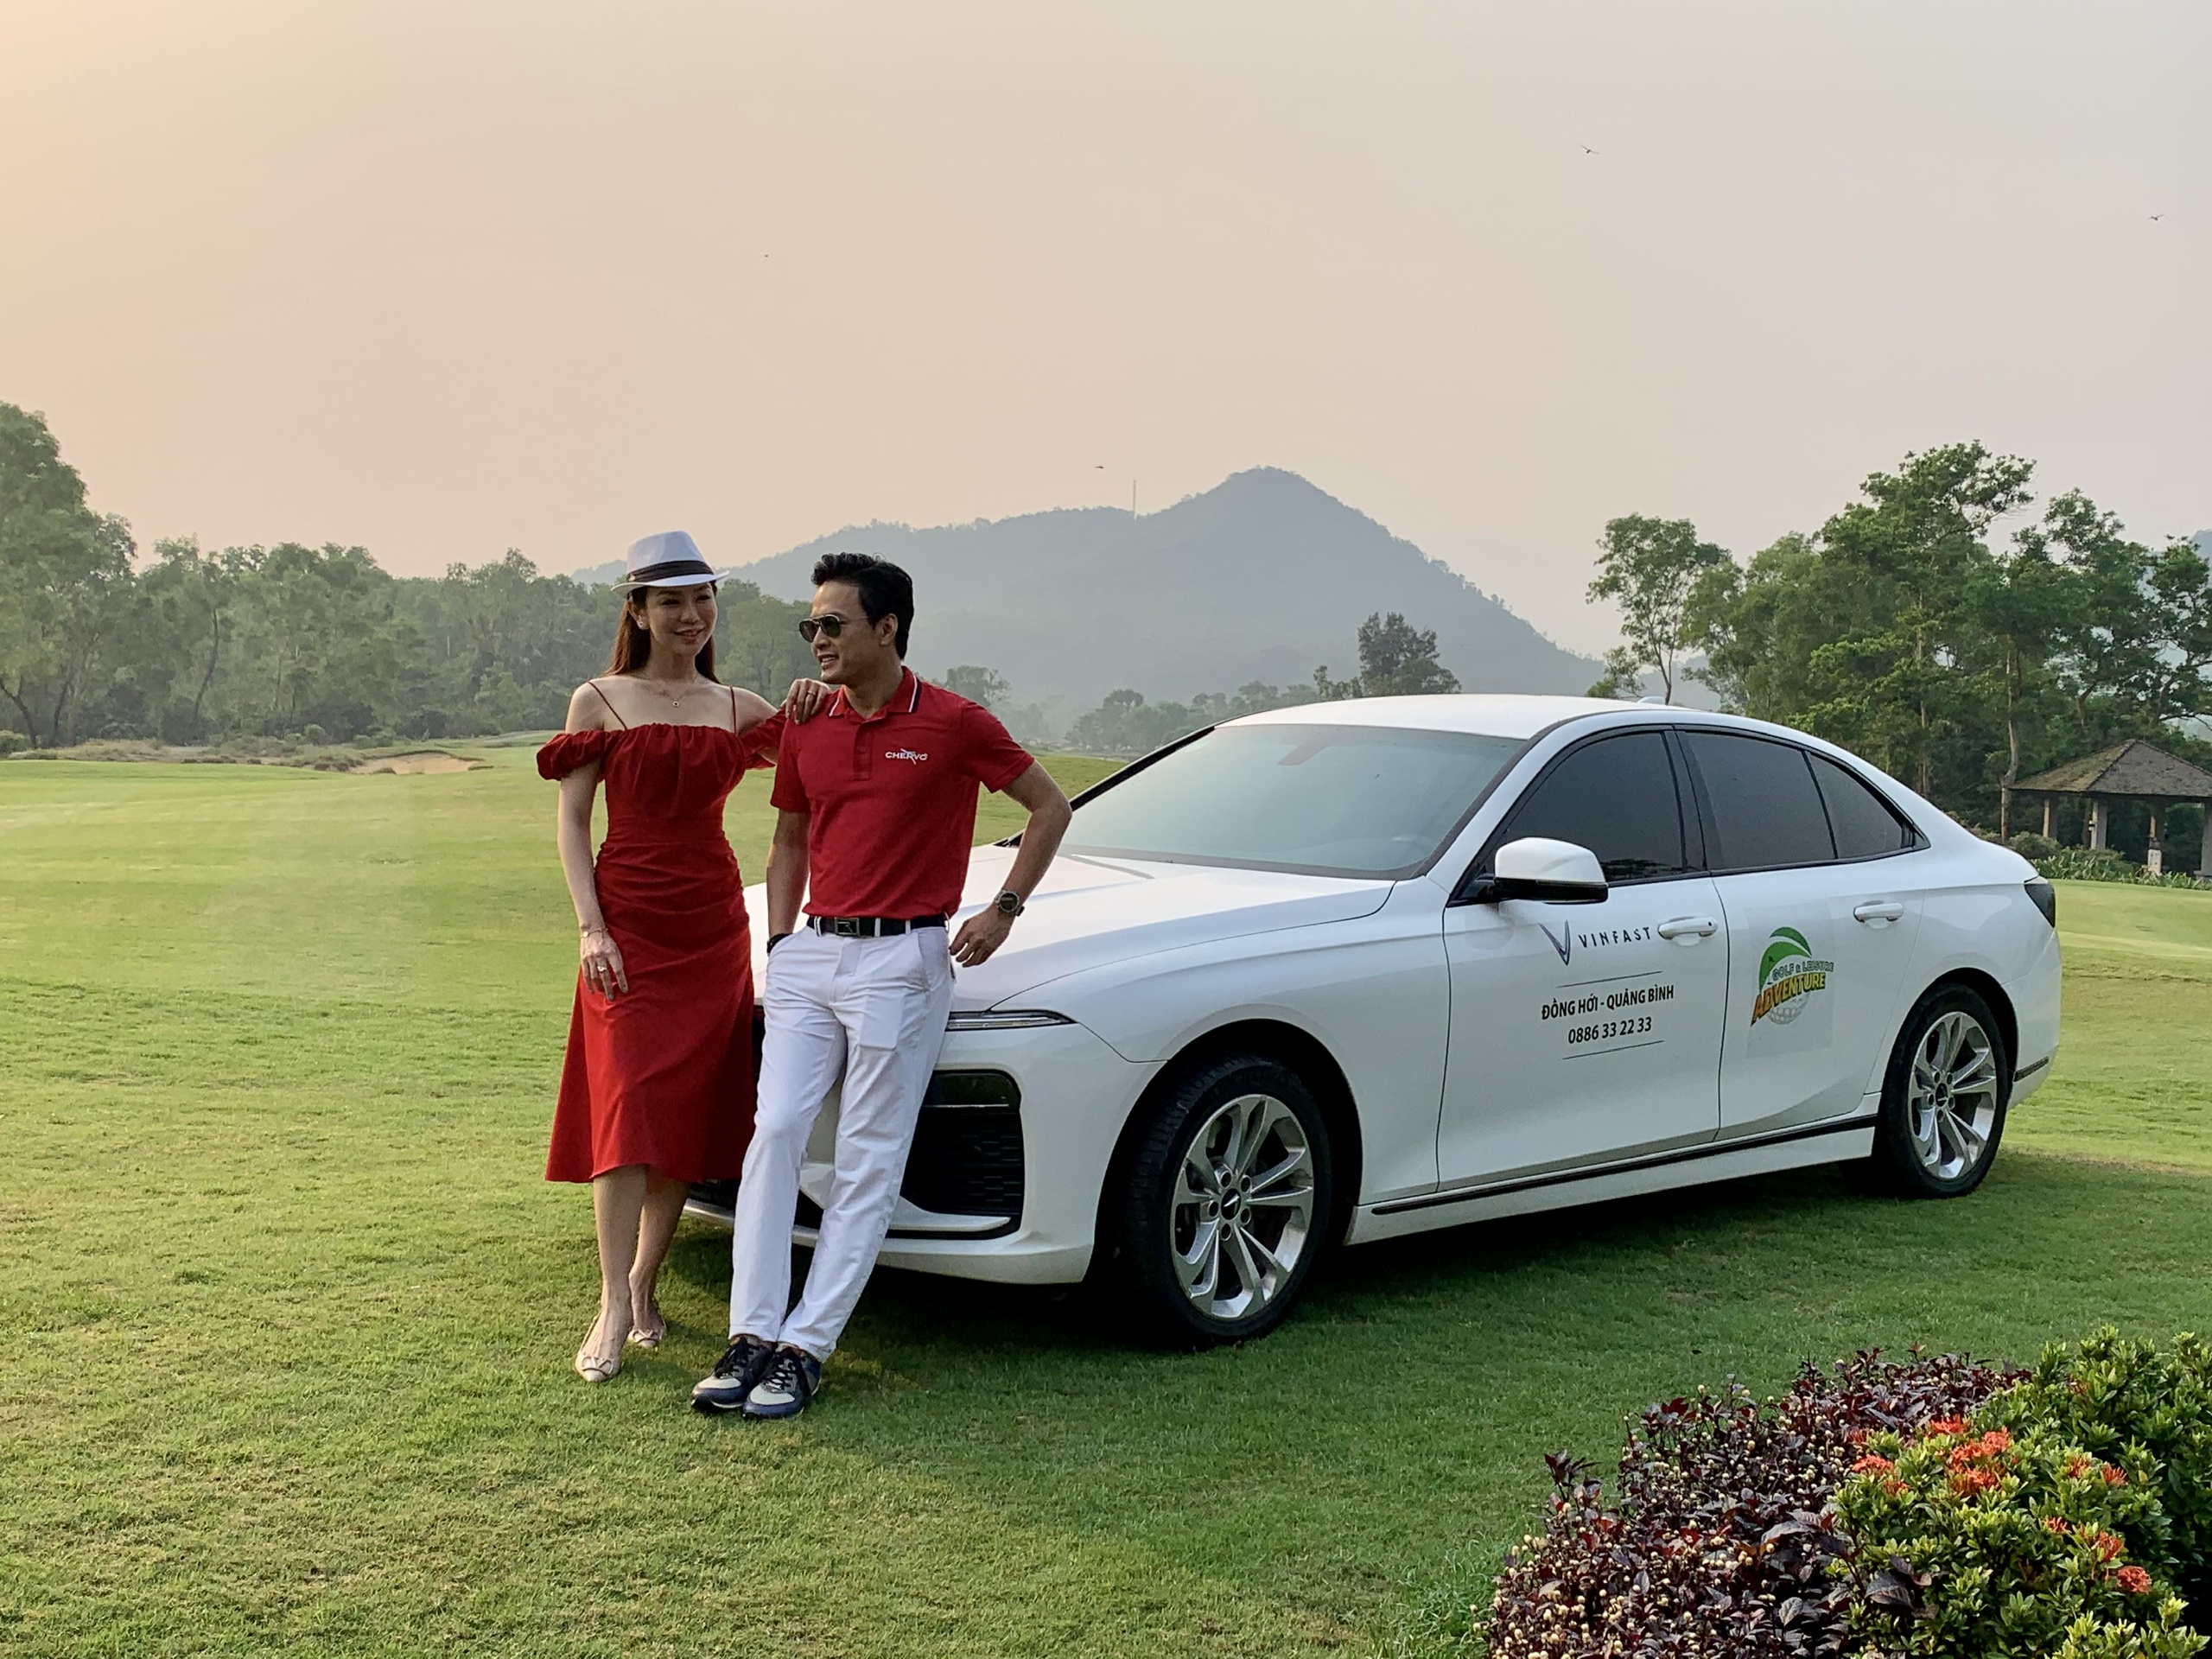 Diễn viên Hồng Đăng cùng Á hoàng Golf Queen trong sắc đỏ bên xe Vinfast tại sân golf Laguna Lăng Cô